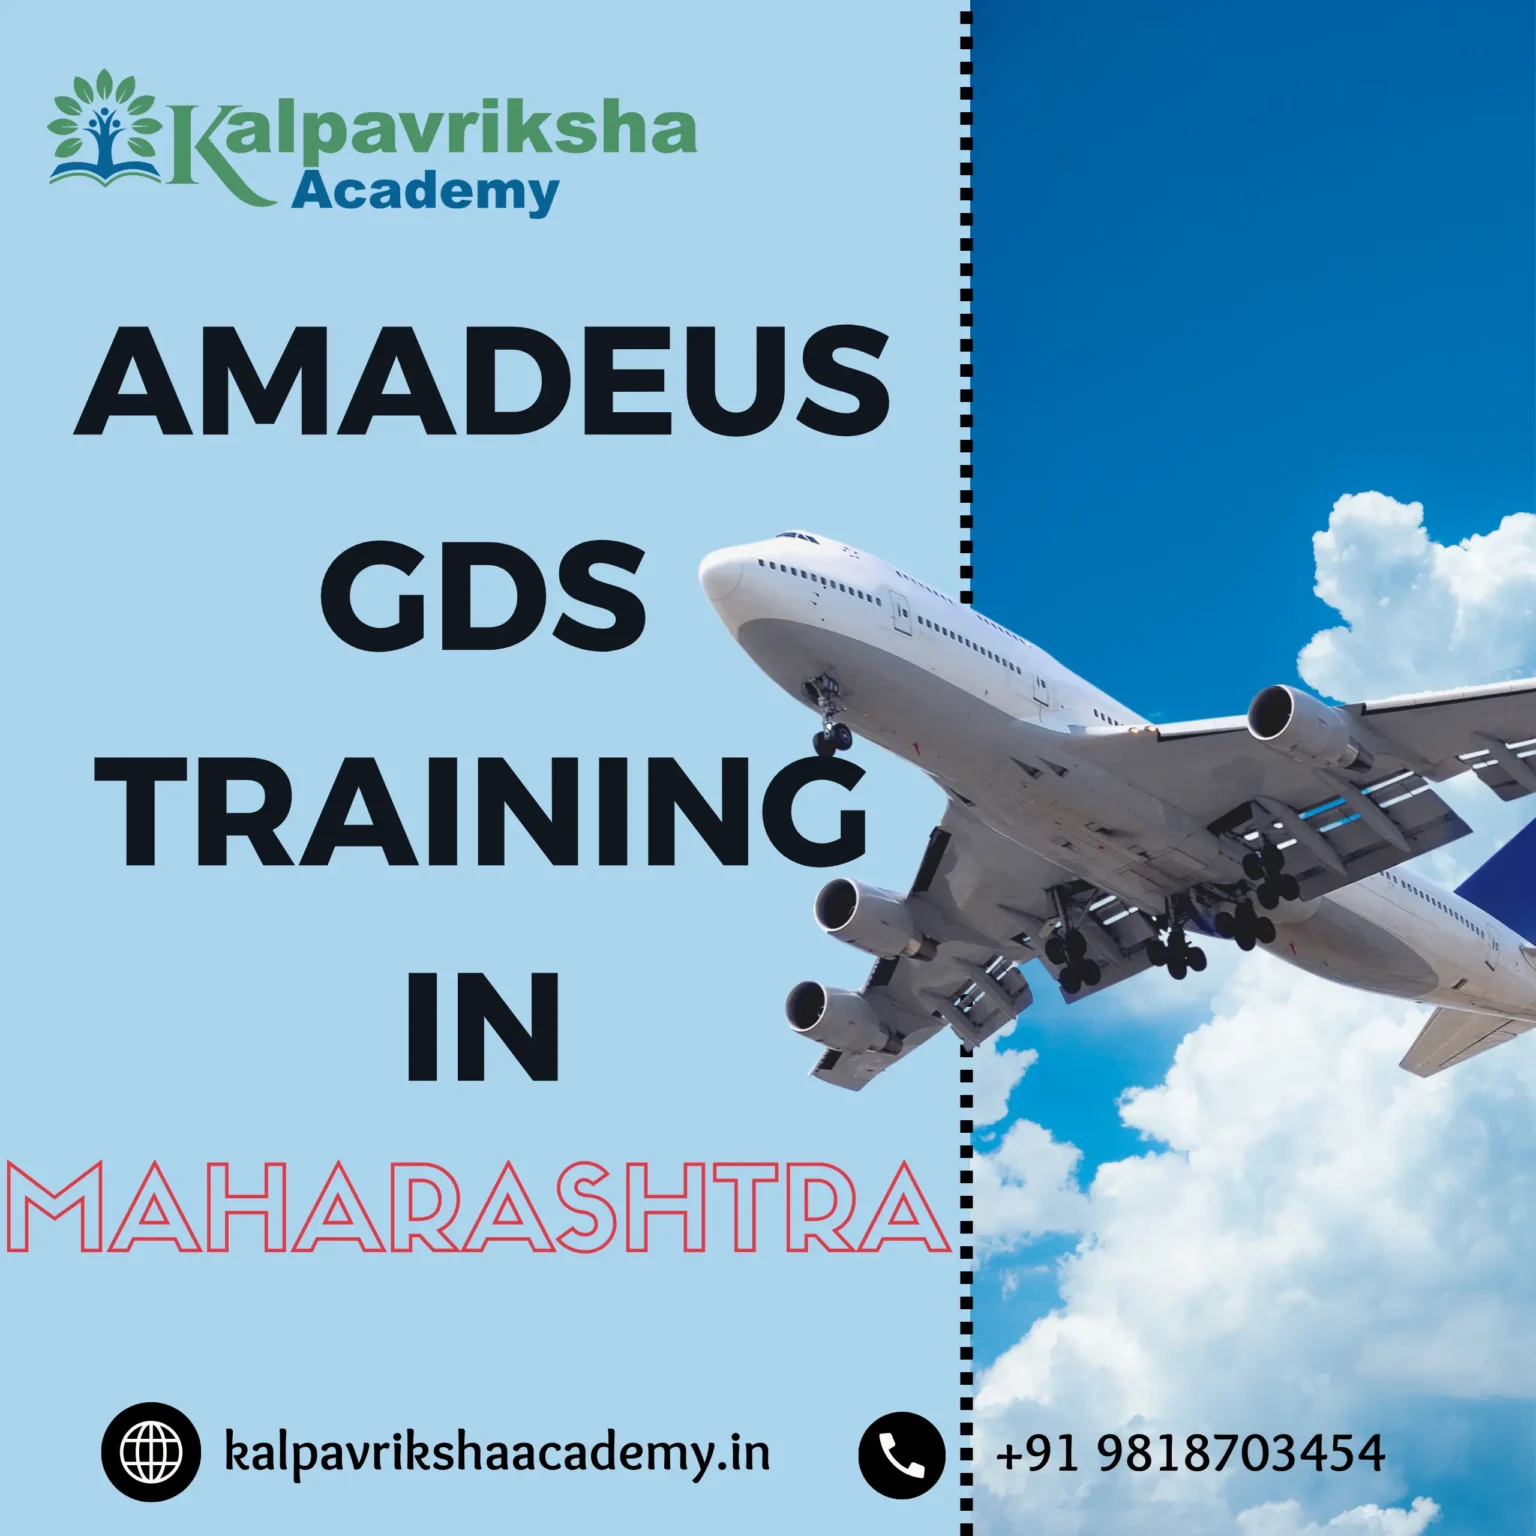 Amadeus GDS Training in Maharashtra - Kalpavriksha Academy